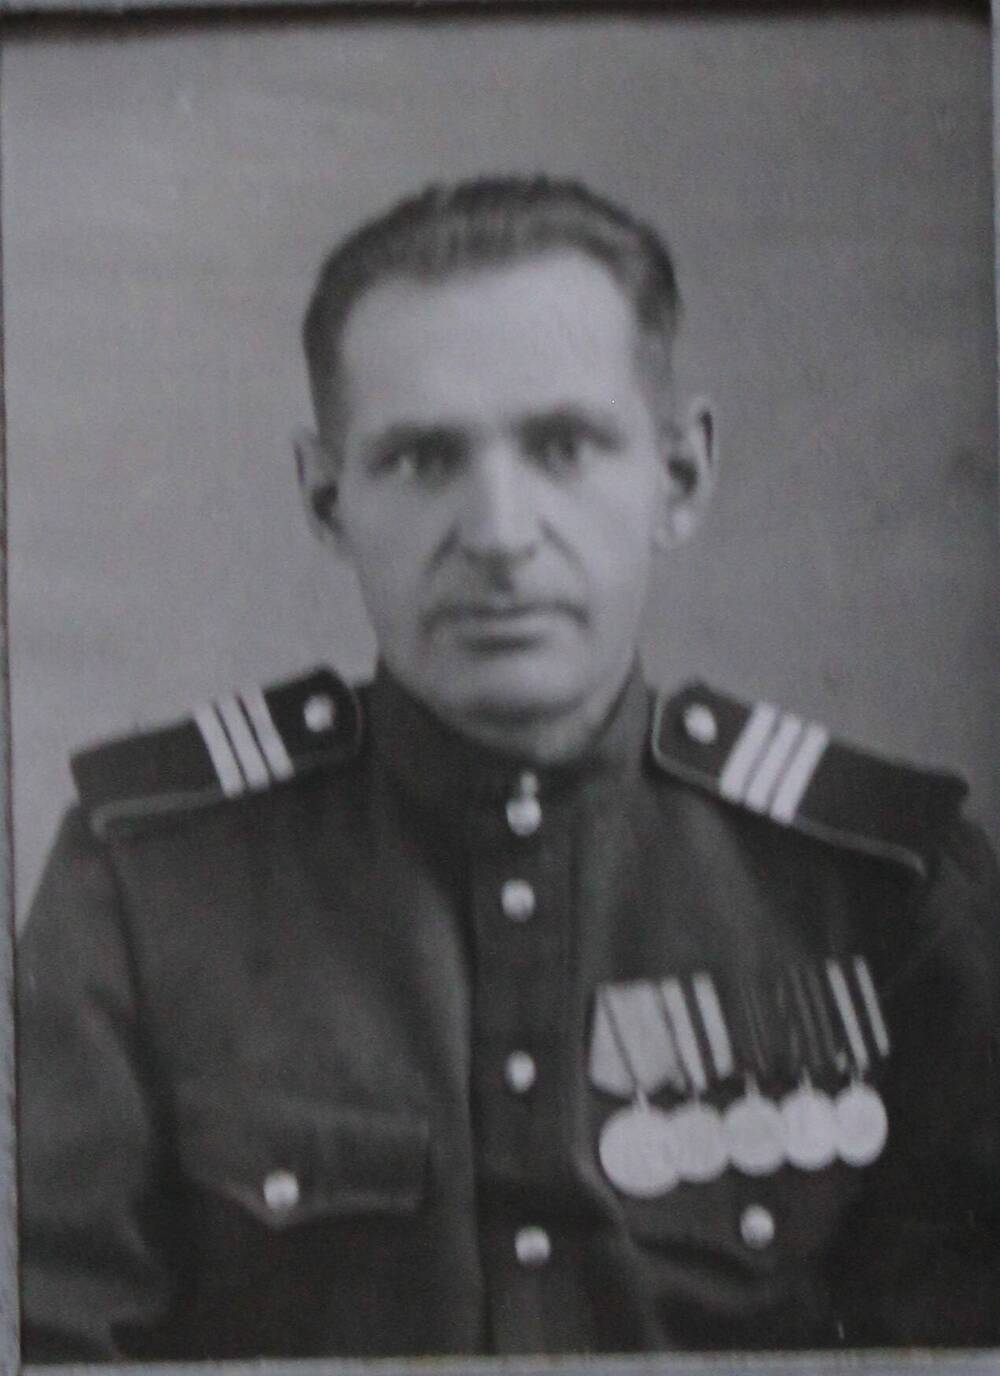 Фотография участника Великой Отечественной войны Яцкевич Александра Даниловича